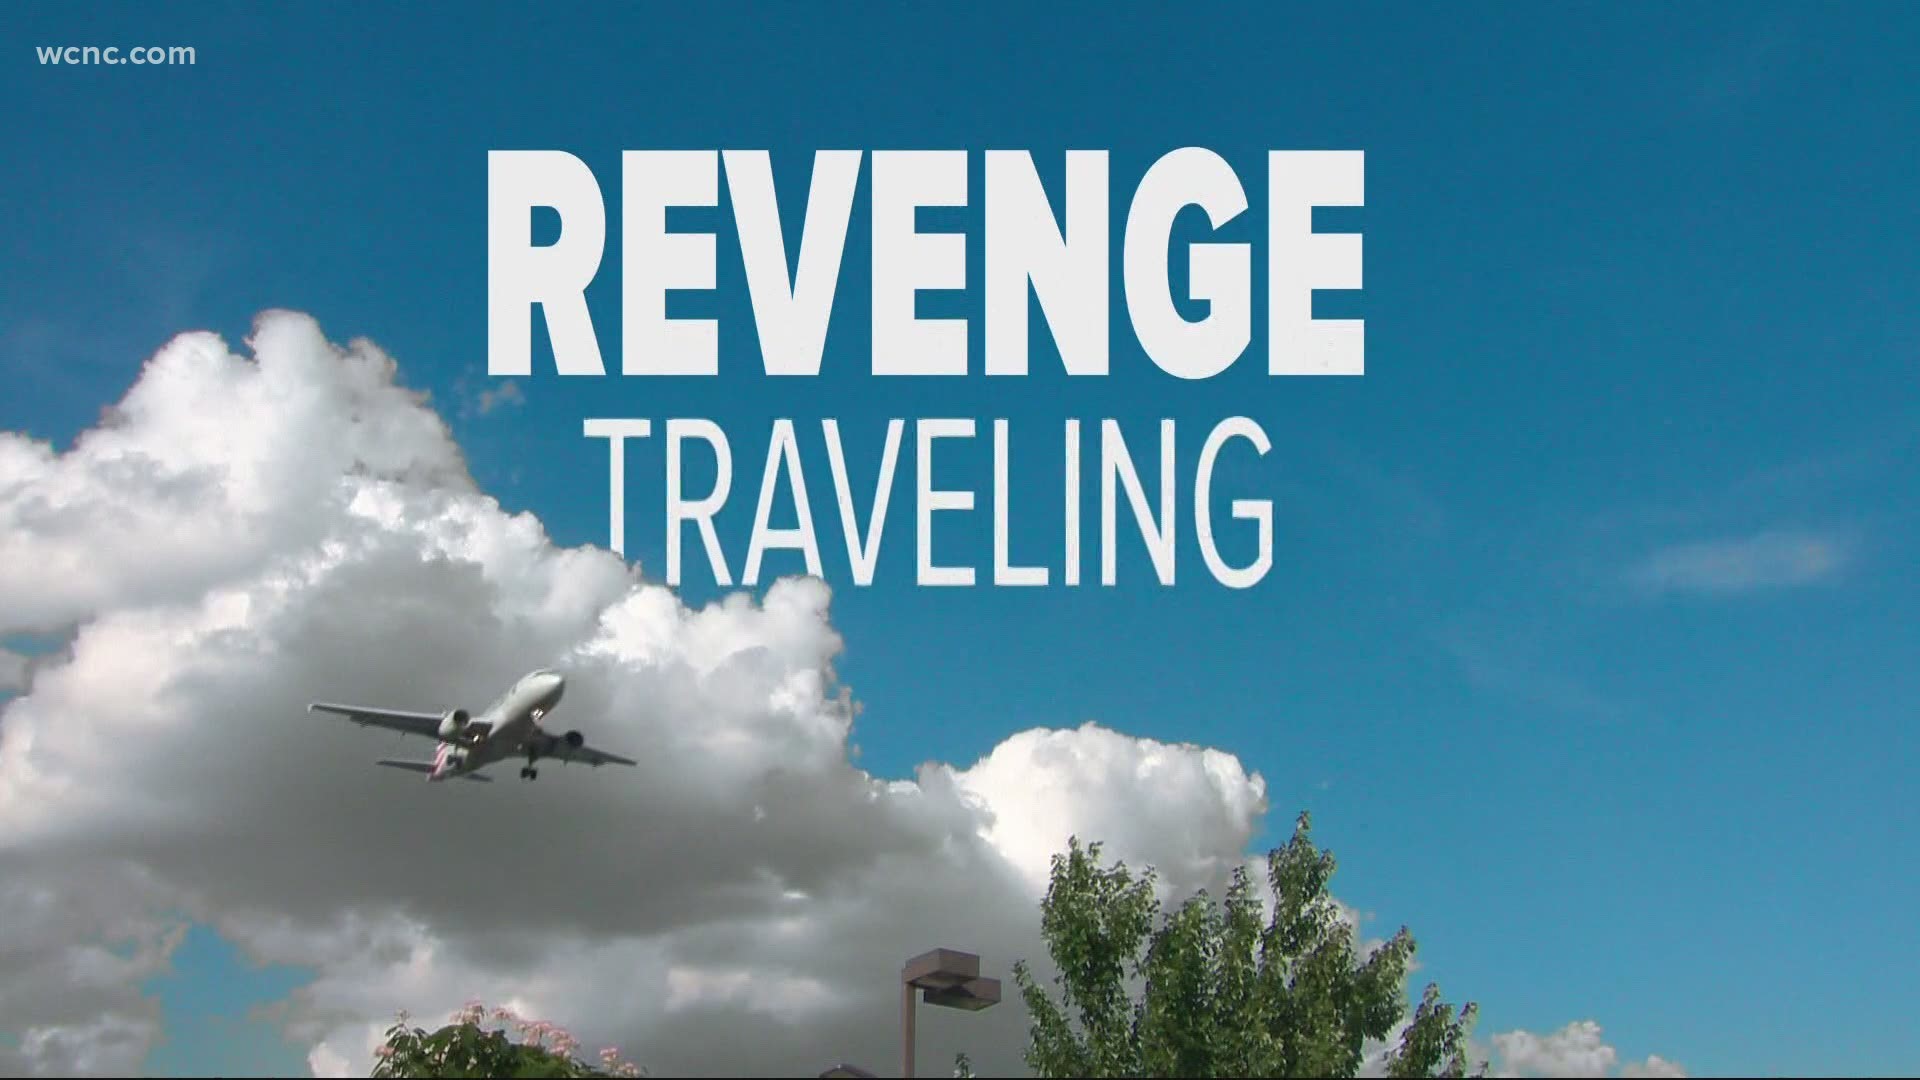 Revenge Travel, nouveau concept voyages qui fait son chemin au Maroc